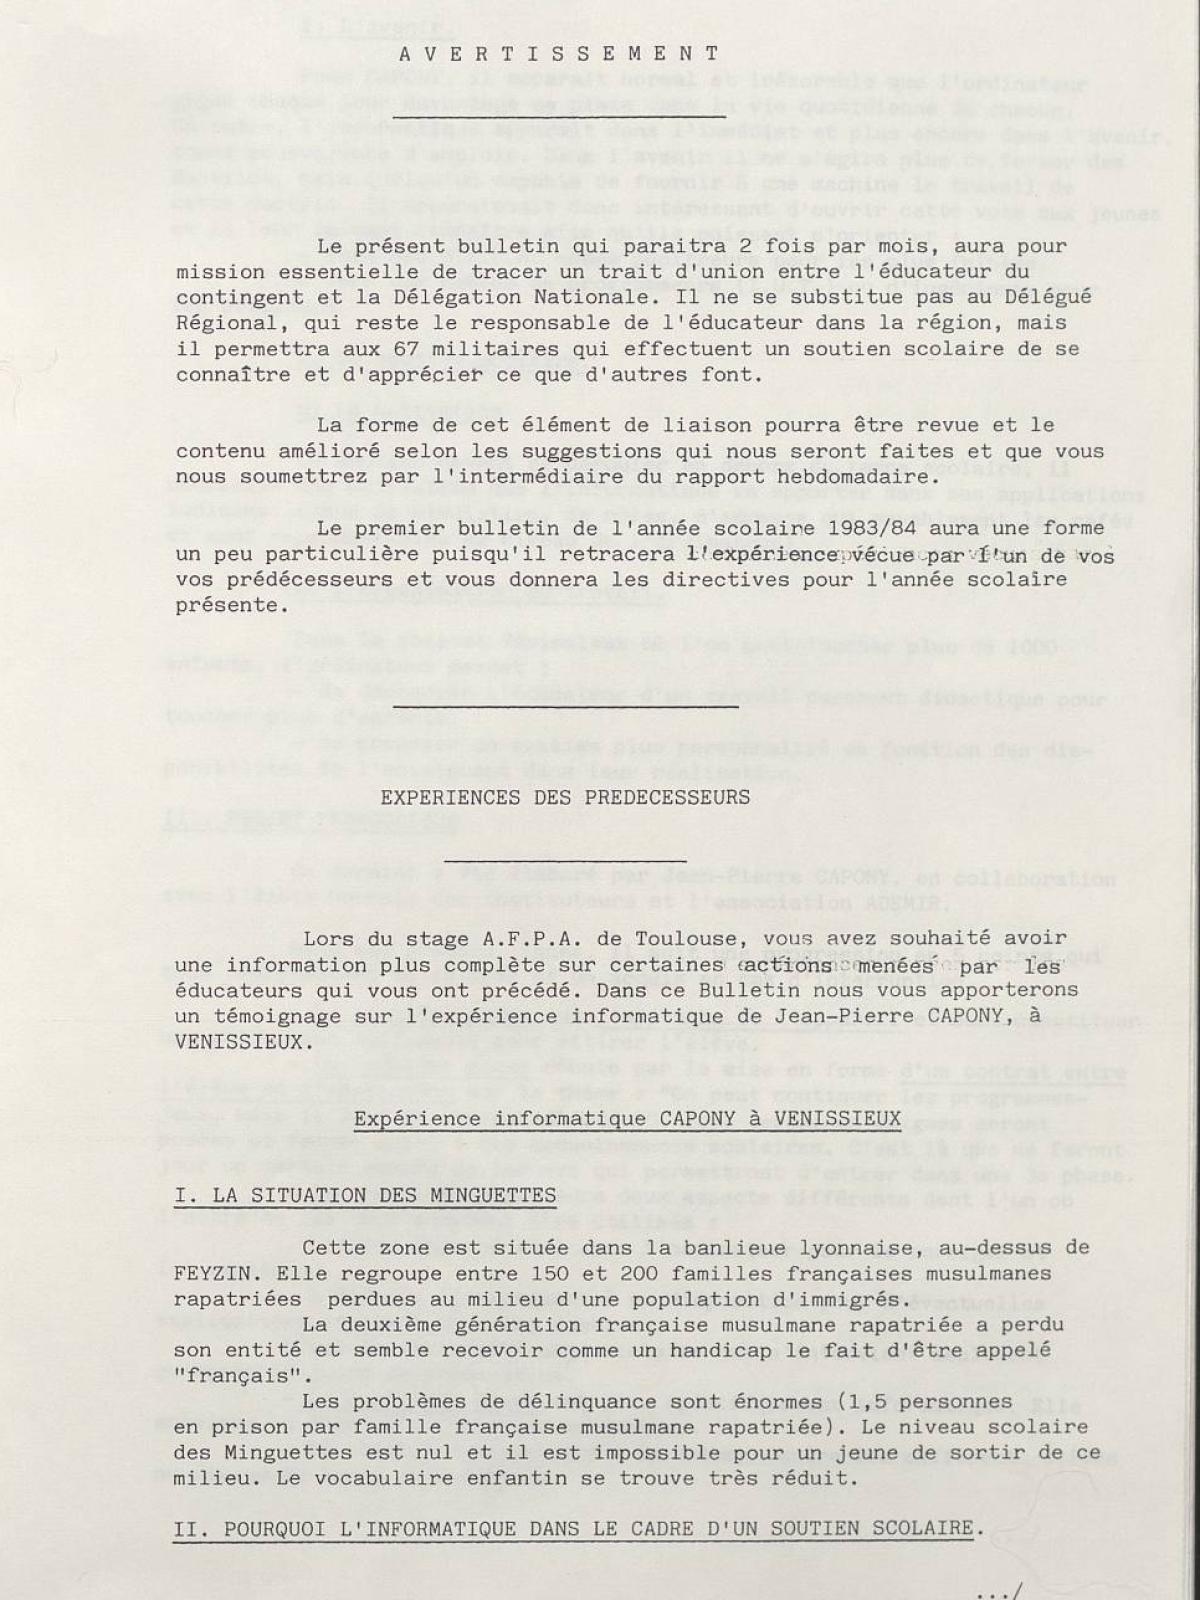 Illustration 1 : Bulletin de liaison des éducateurs (BLÉ) n°1, 15 septembre 1983 (Archives nationales, 19870444/8)